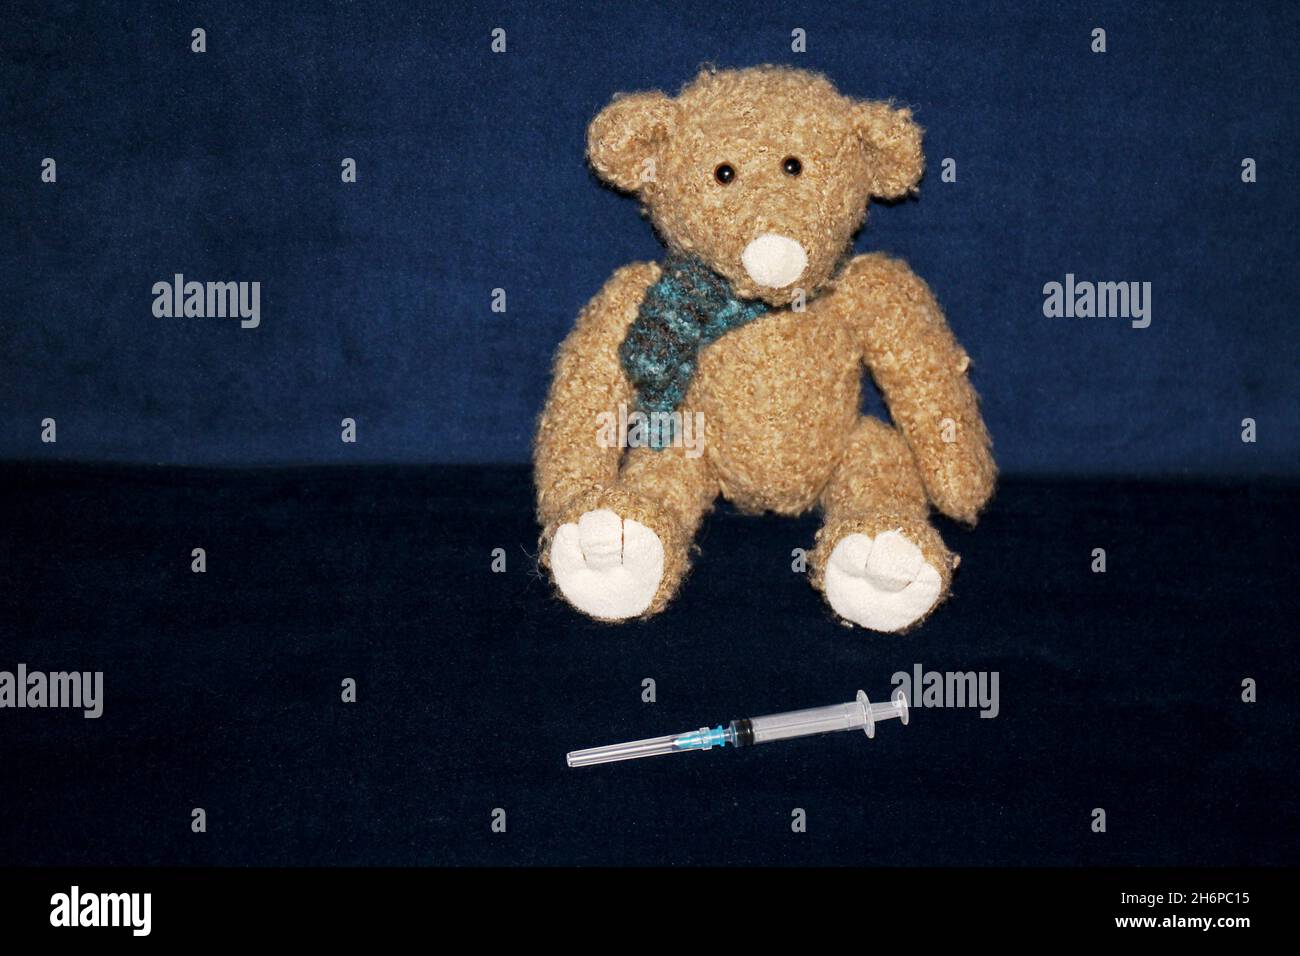 Kuscheltier Teddy sitzend auf einem dunkelblauen Sofa aus Samt. Vor ihm liegt eine Spritze. Stock Photo